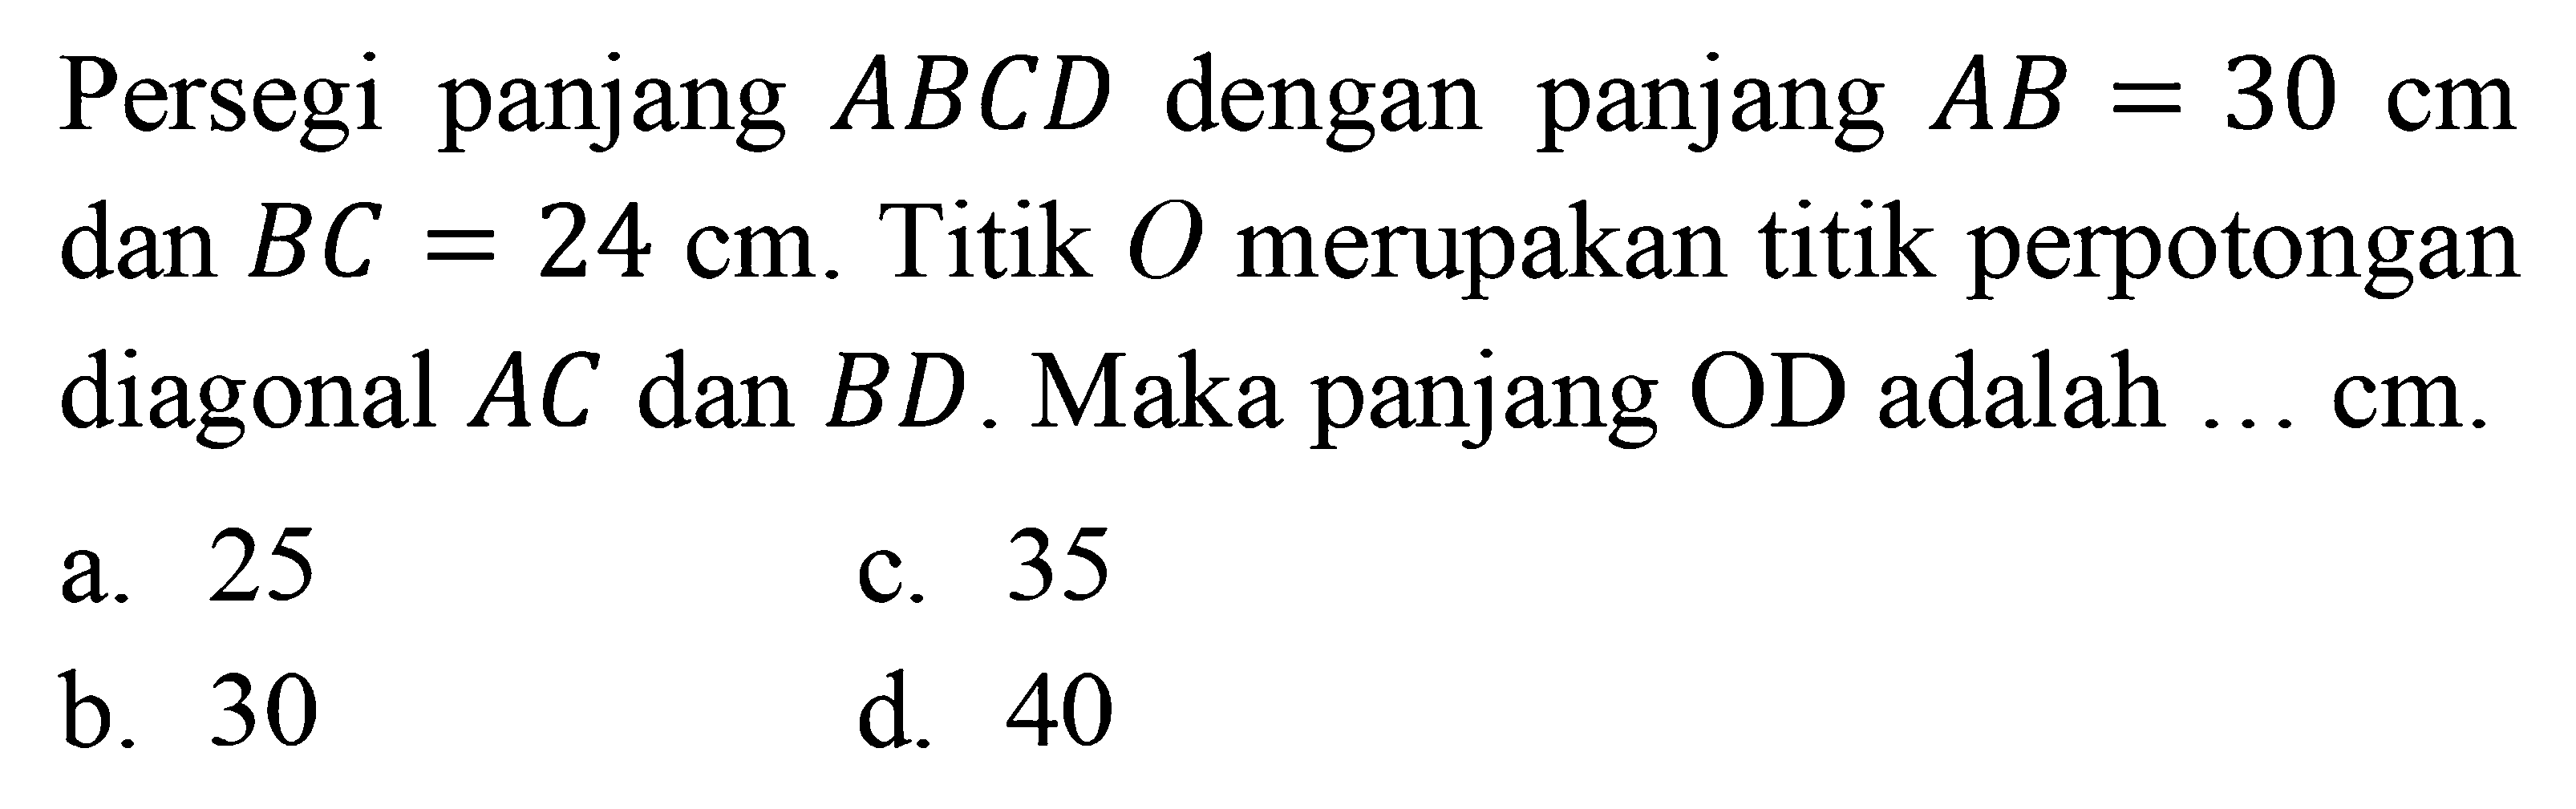 Persegi panjang ABCD dengan panjang AB=30 cm dan BC=24 cm. Titik O merupakan titik perpotongan diagonal AC dan BD. Maka panjang OD adalah...  cm. 